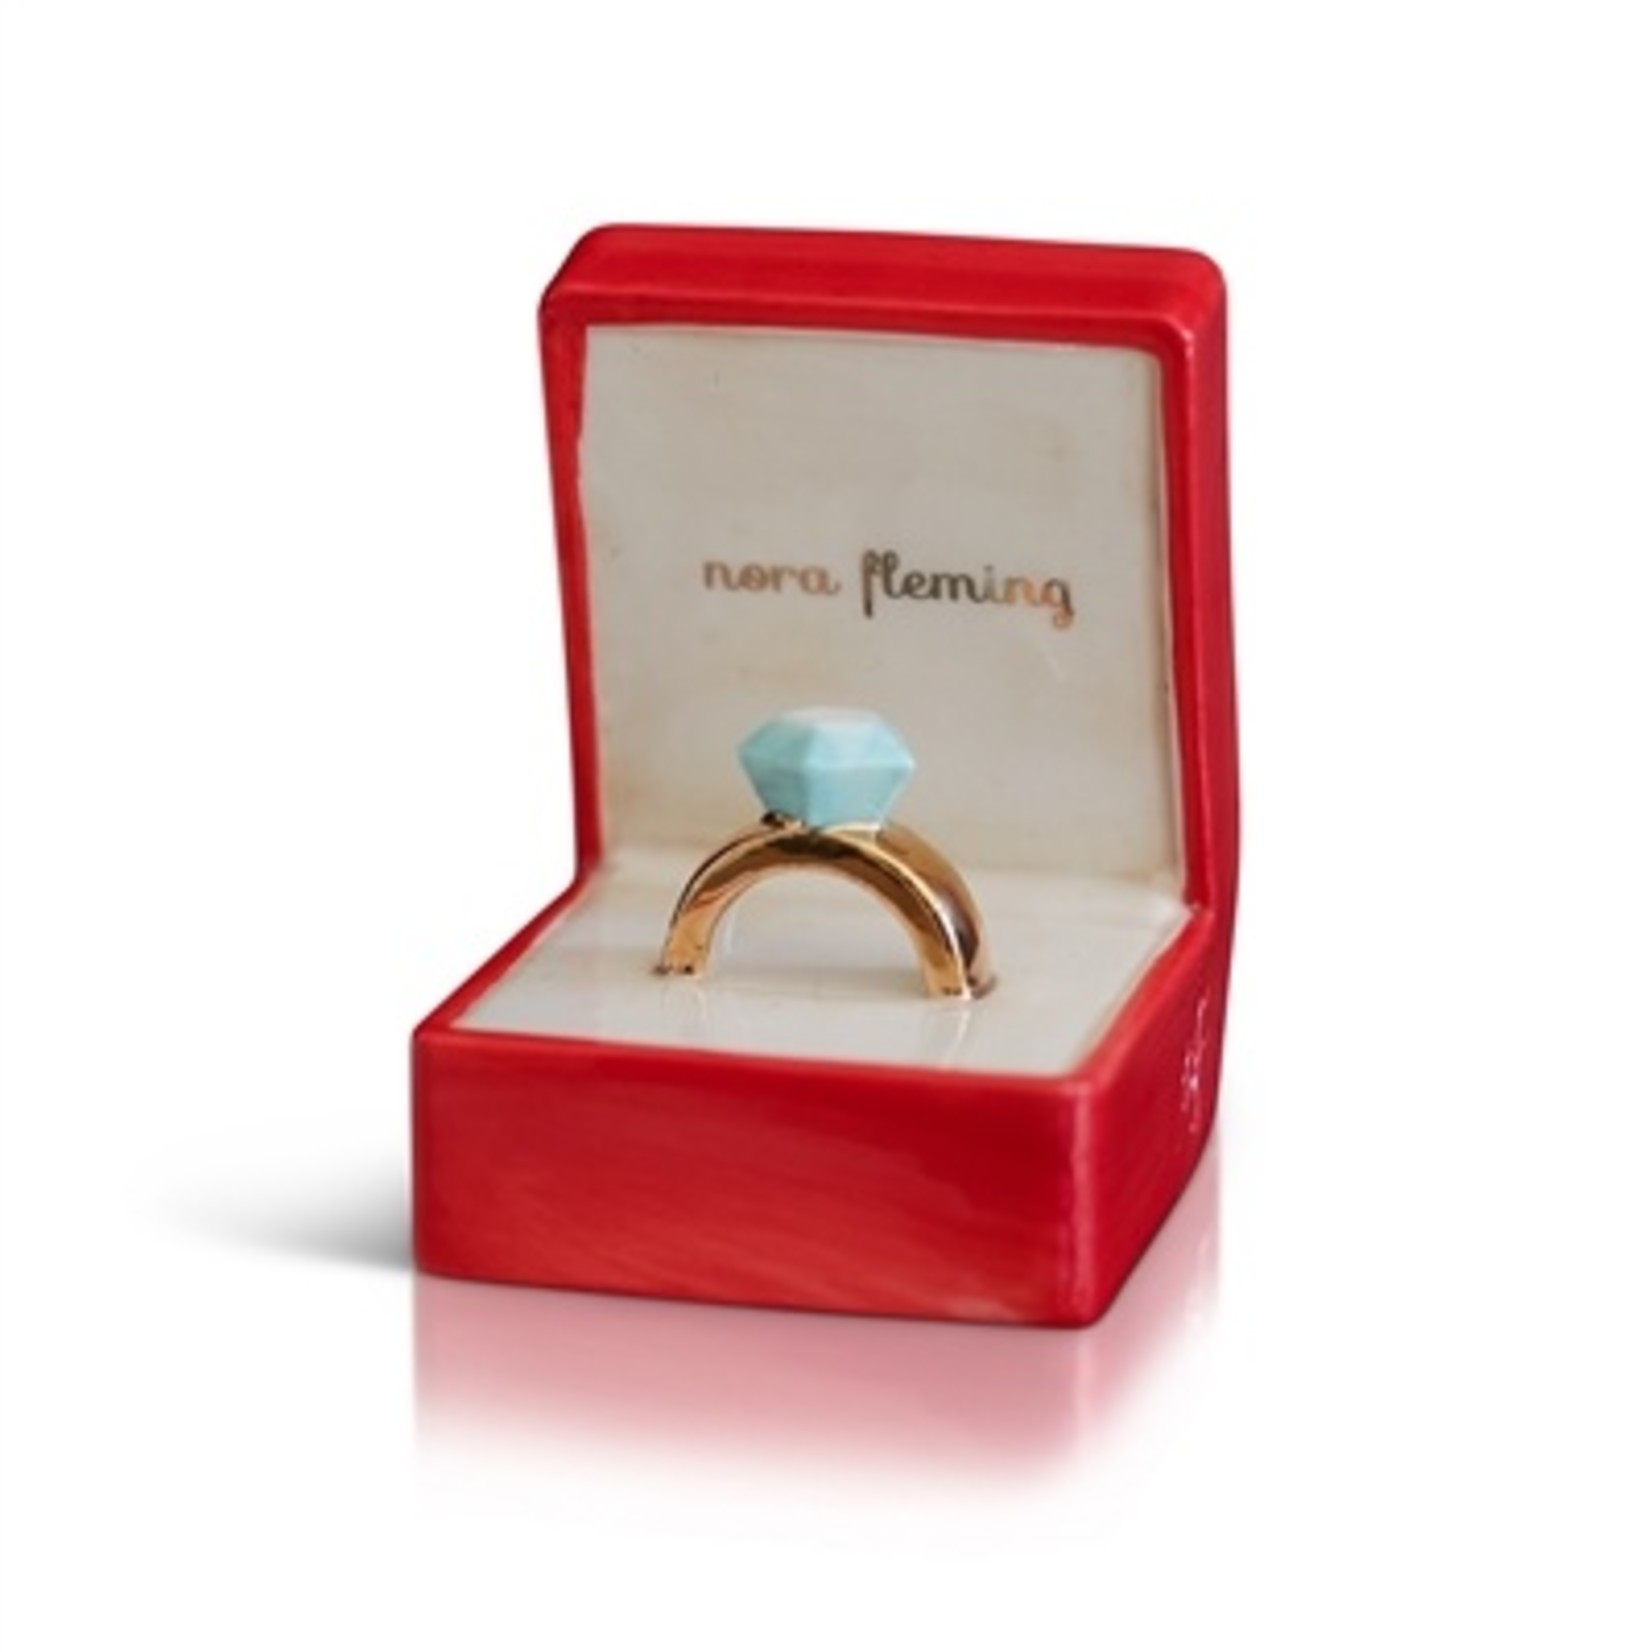 Nora Fleming Nora Fleming Charm - Ring Box